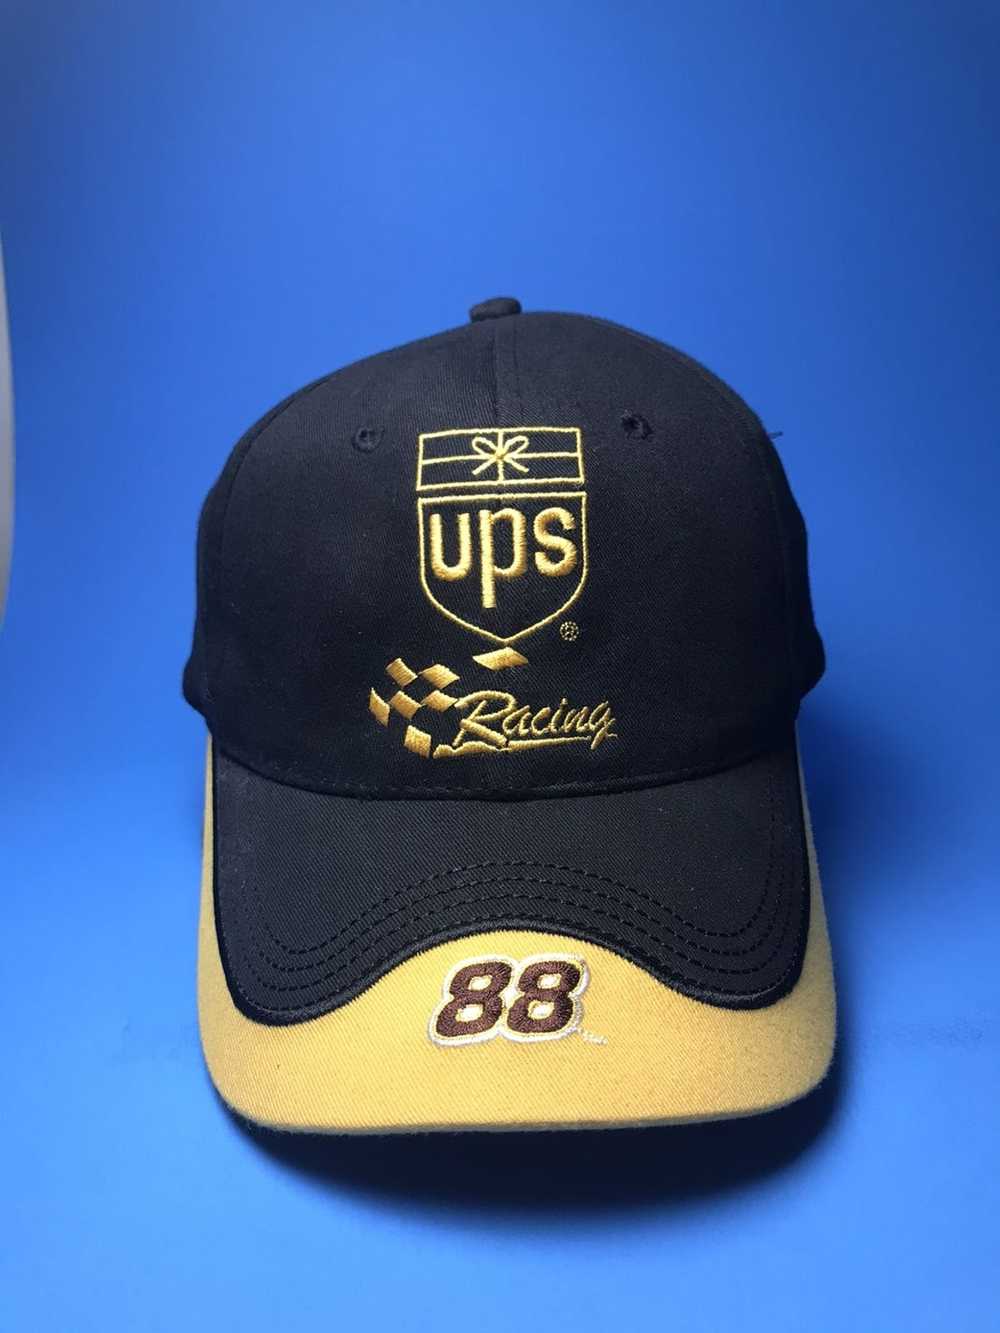 Vintage Vintage UPS Racing Nascar Hat - image 1